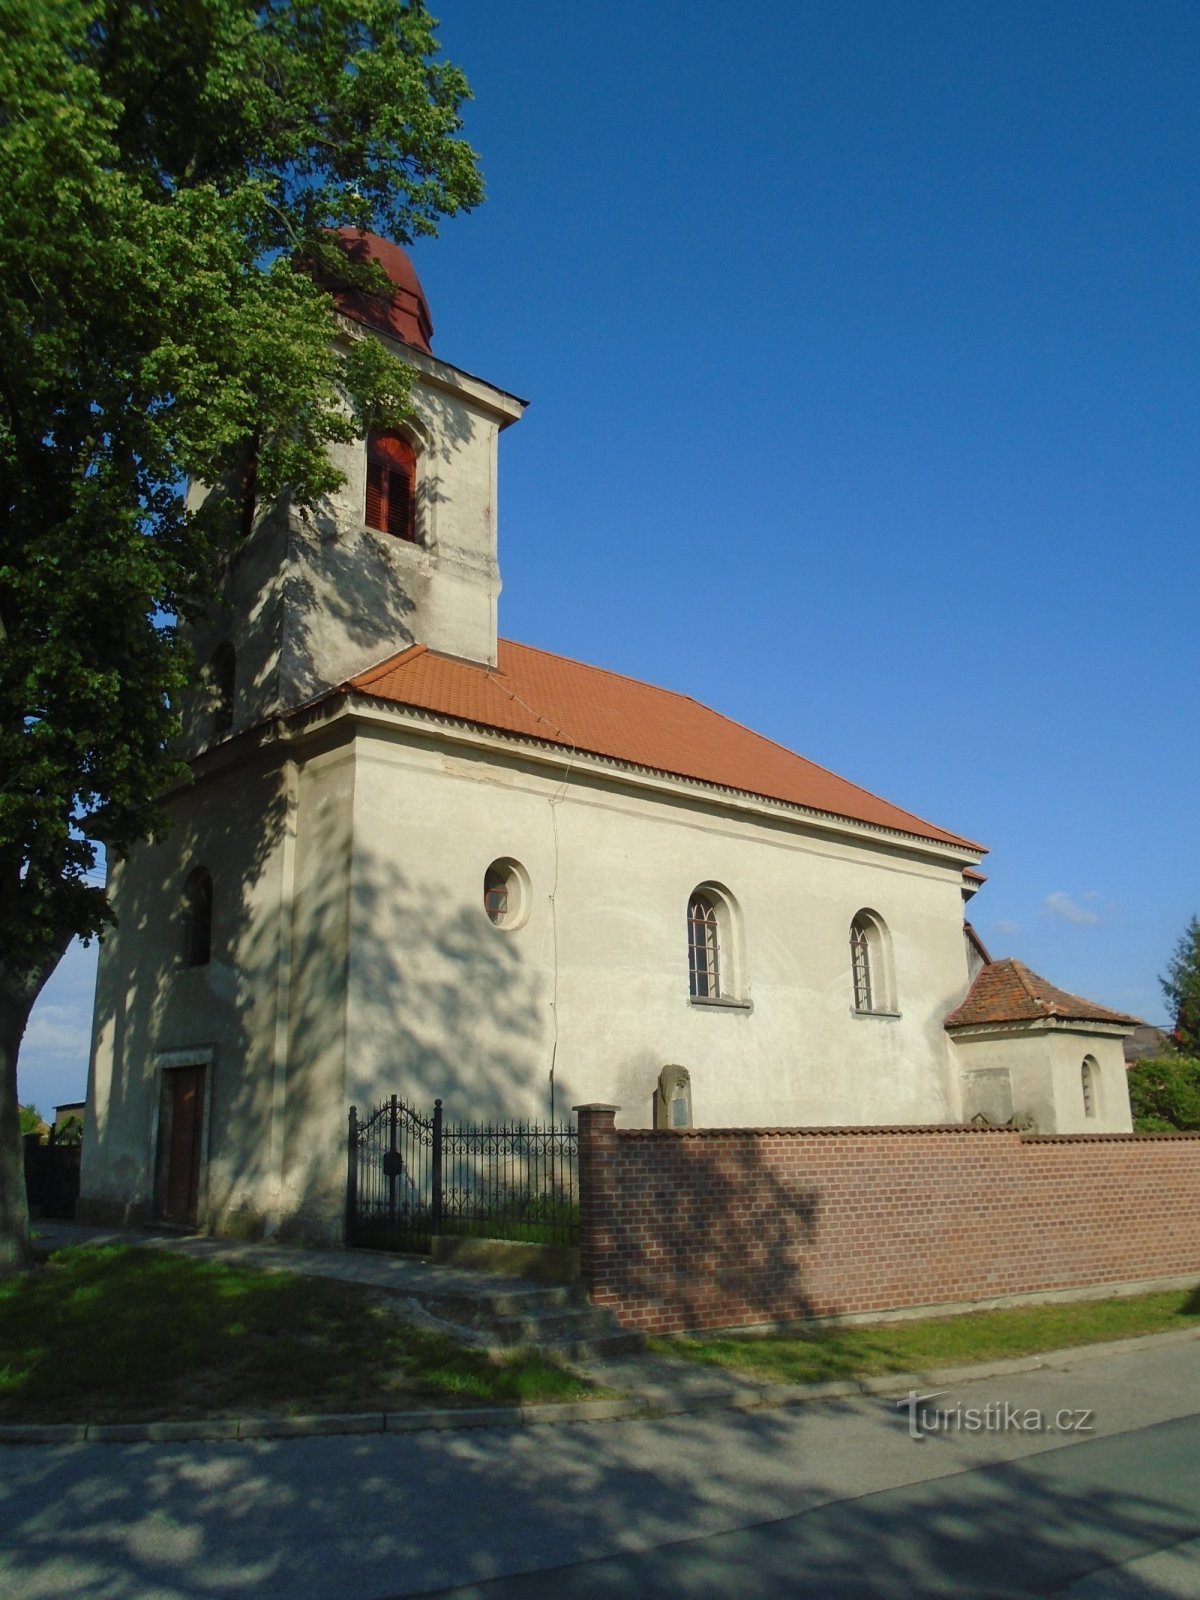 Iglesia de la Santísima Trinidad (Praskačka, 21.5.2019/XNUMX/XNUMX)